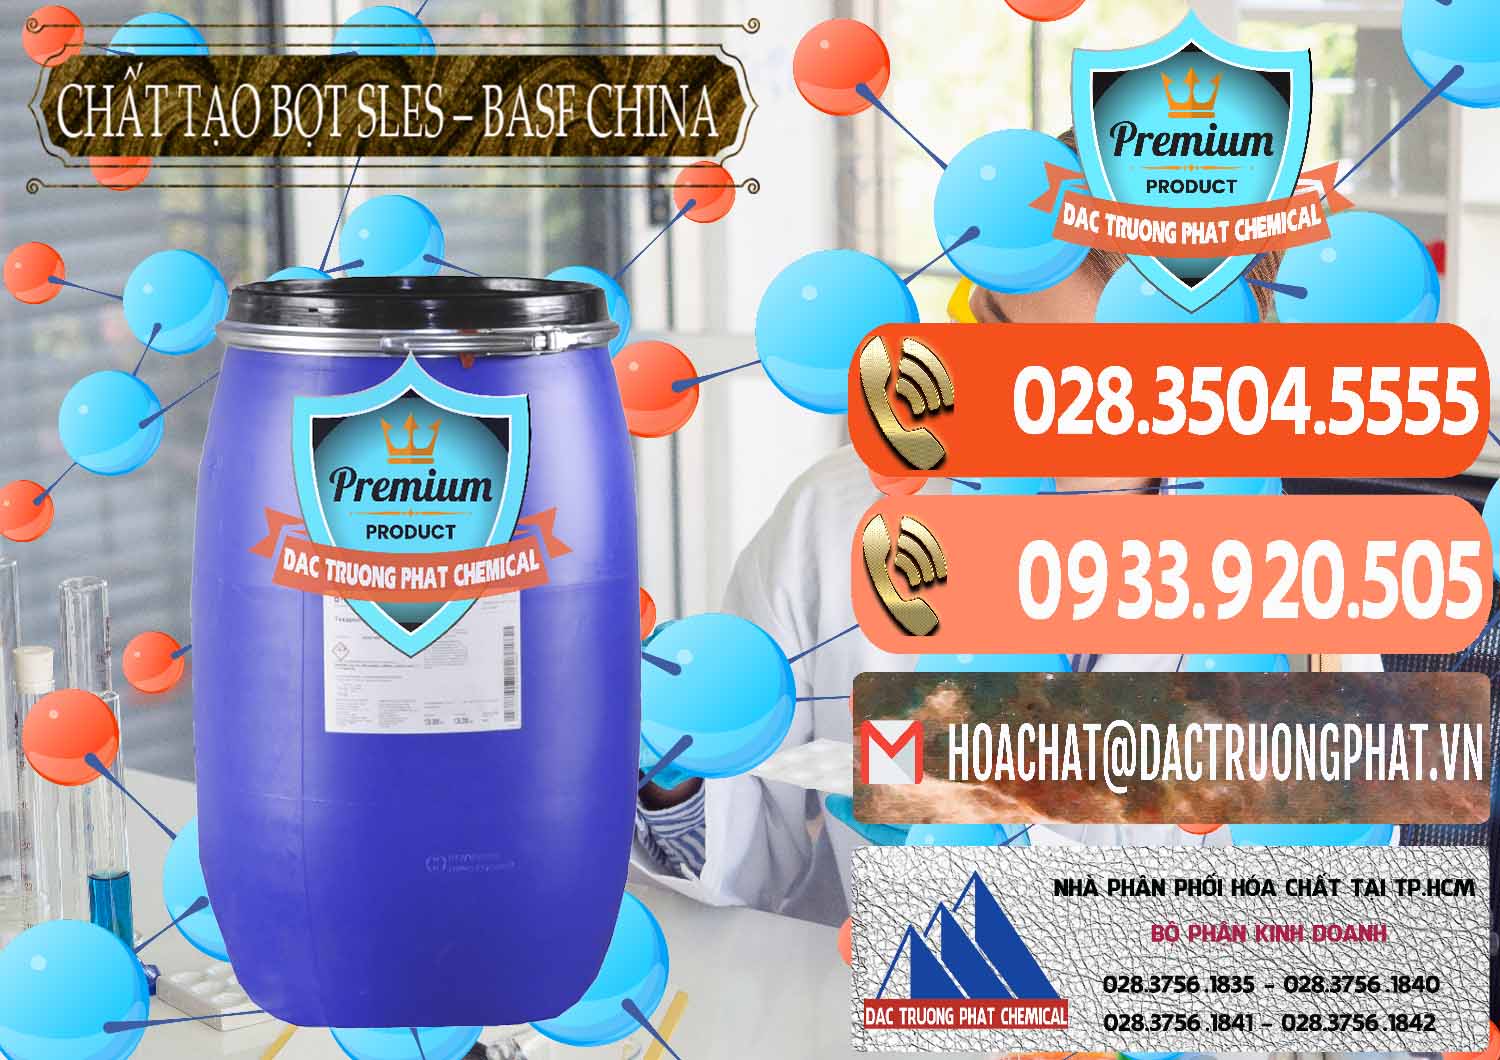 Nơi cung cấp & bán Chất Tạo Bọt Sles - Sodium Lauryl Ether Sulphate BASF Trung Quốc China - 0332 - Nhà cung ứng _ phân phối hóa chất tại TP.HCM - hoachatmientay.com